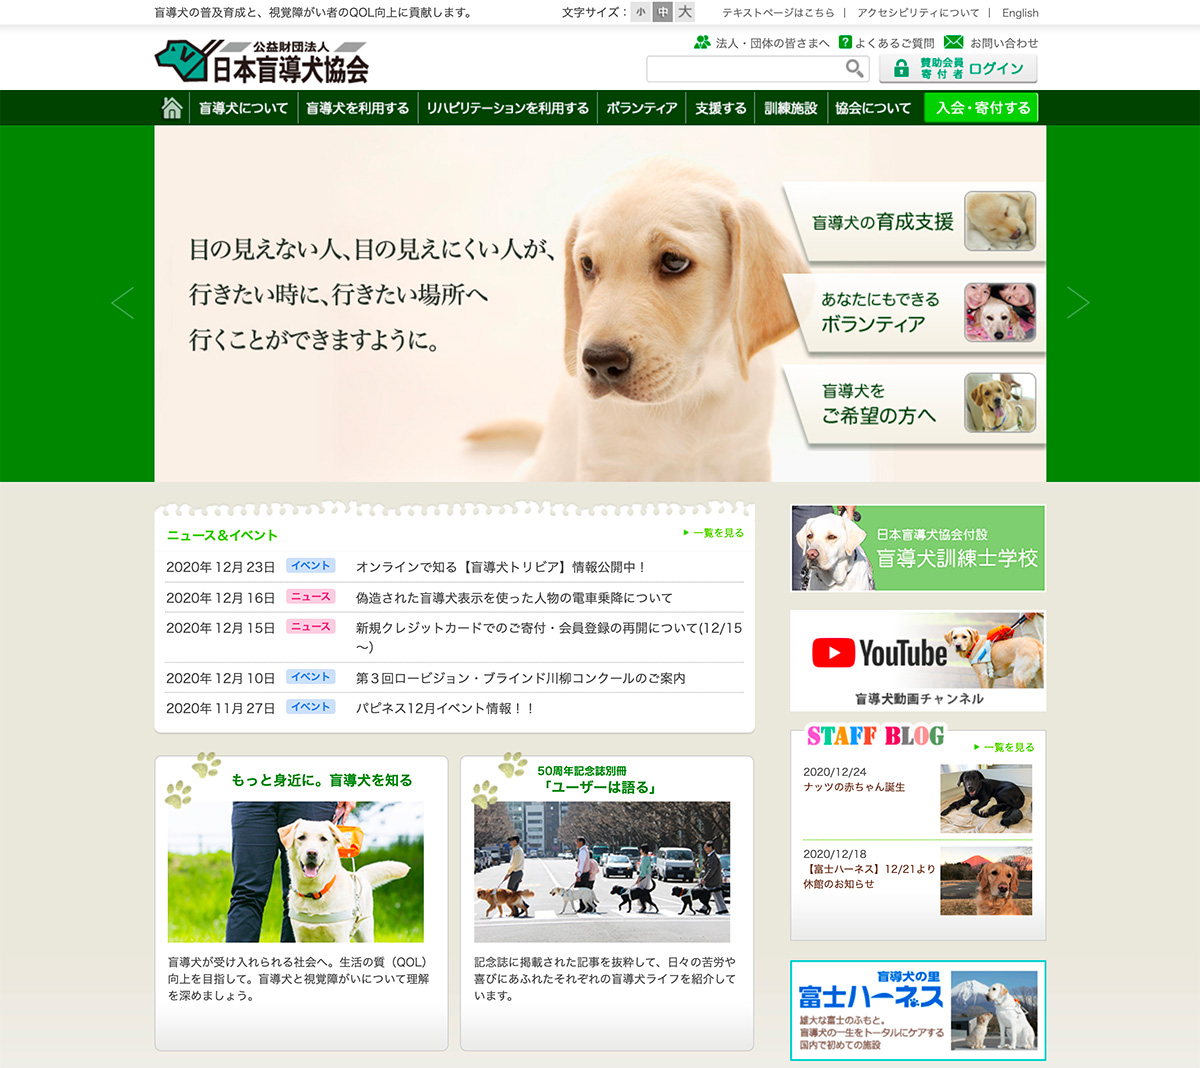 ぬこファクトリーは盲導犬協会の賛助会員になりました ぬこファクトリー 愛媛県松山市 Web広告運用 ホームページ制作 Sns運営代行